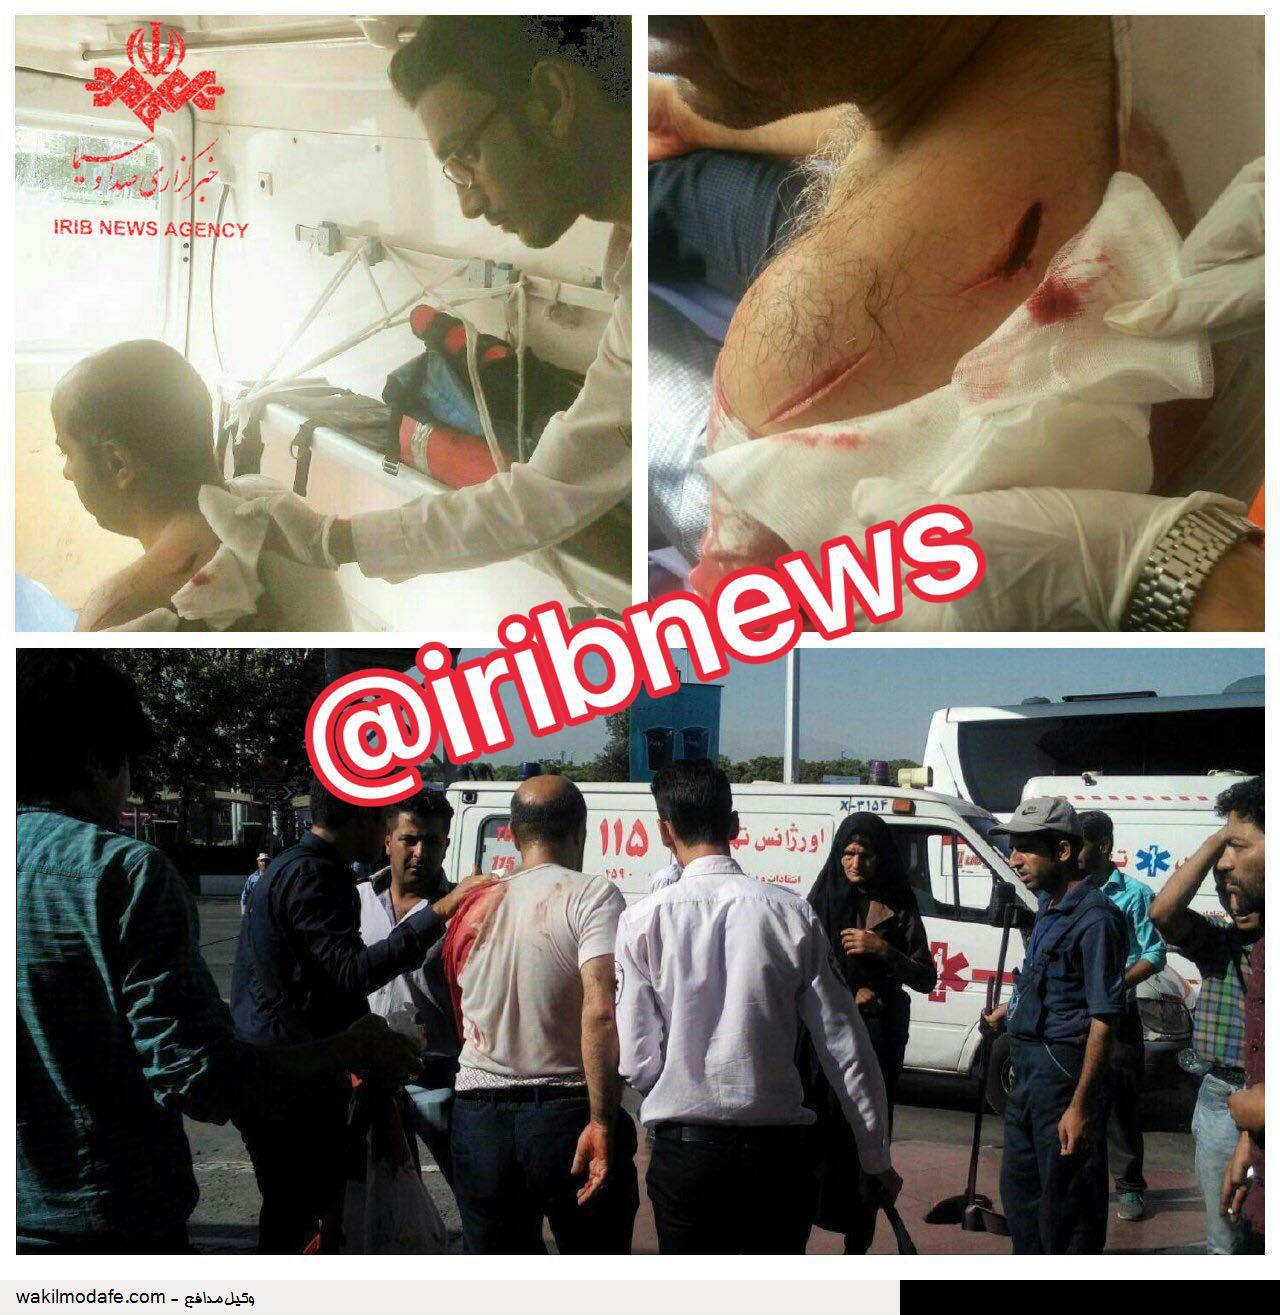 چاقوکشی در ترمینال جنوب تهران/ یک کشته  و 3 زخمی (+عکس)/ پلیس: حادثه تروریستی نیست